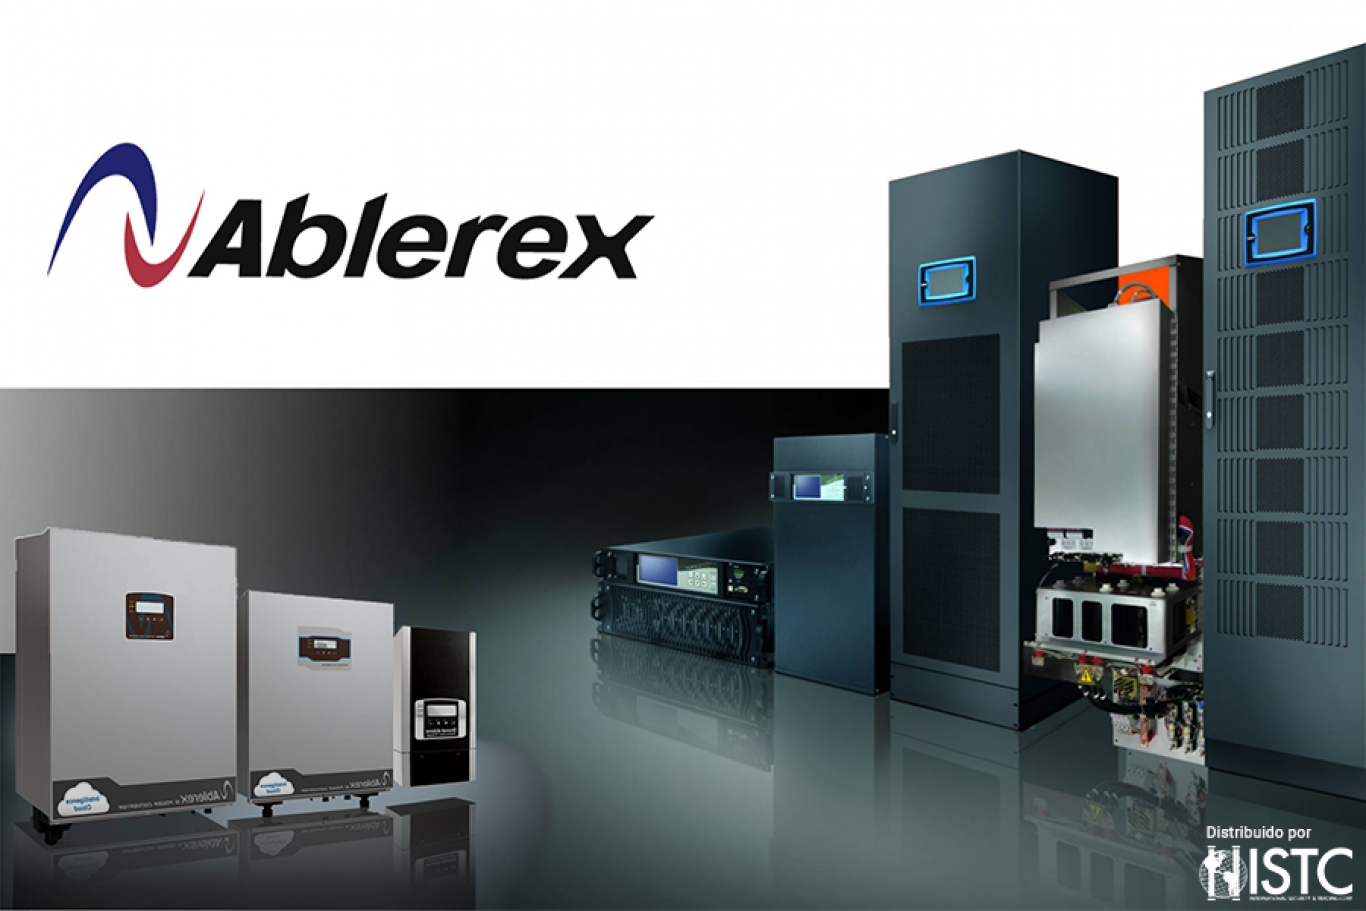 ISTC Corp. amplía su portafolio con soluciones de Ablerex, fabricante de sistemas de energía